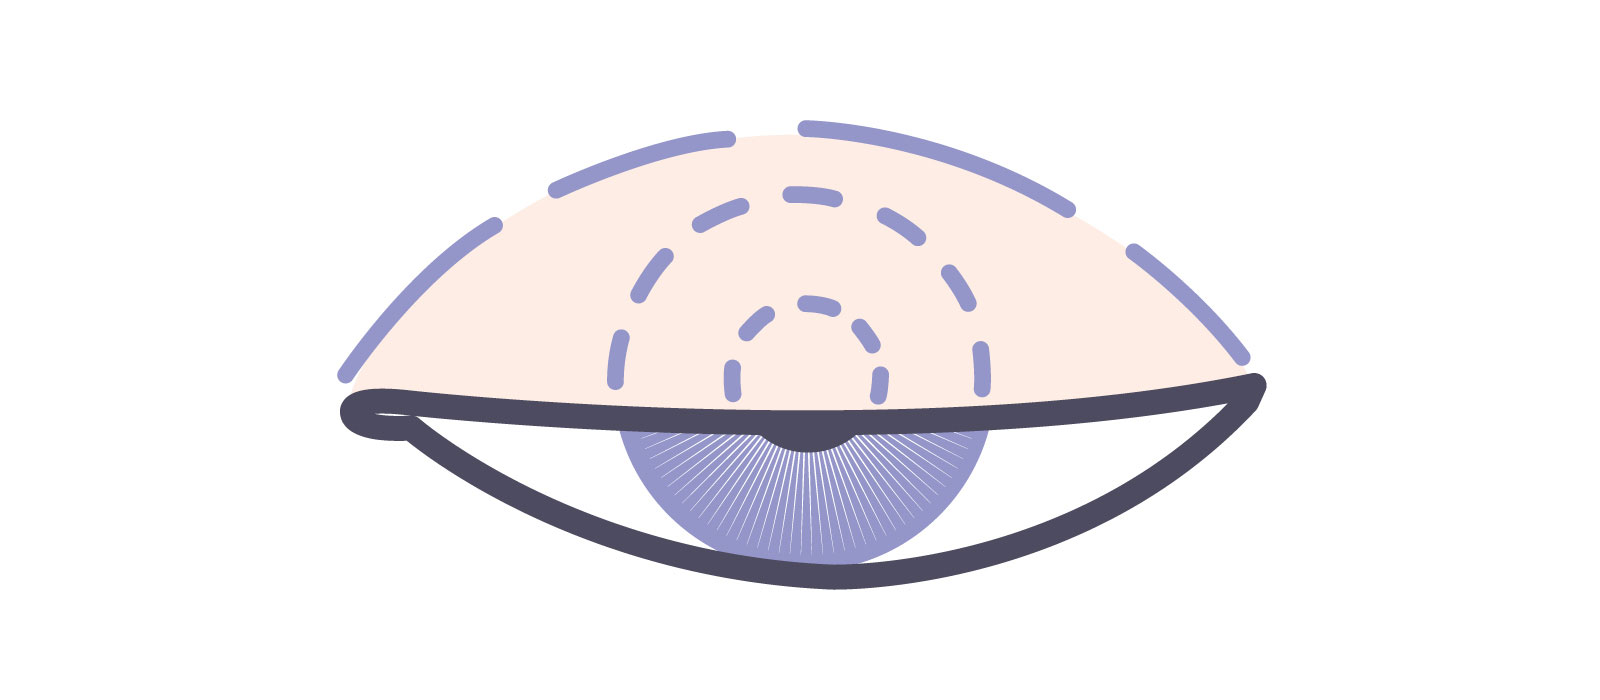 医療機関で眼瞼下垂の程度を診断する際に測定する数値 MRD-1（marginal reflex distance-1） イラスト